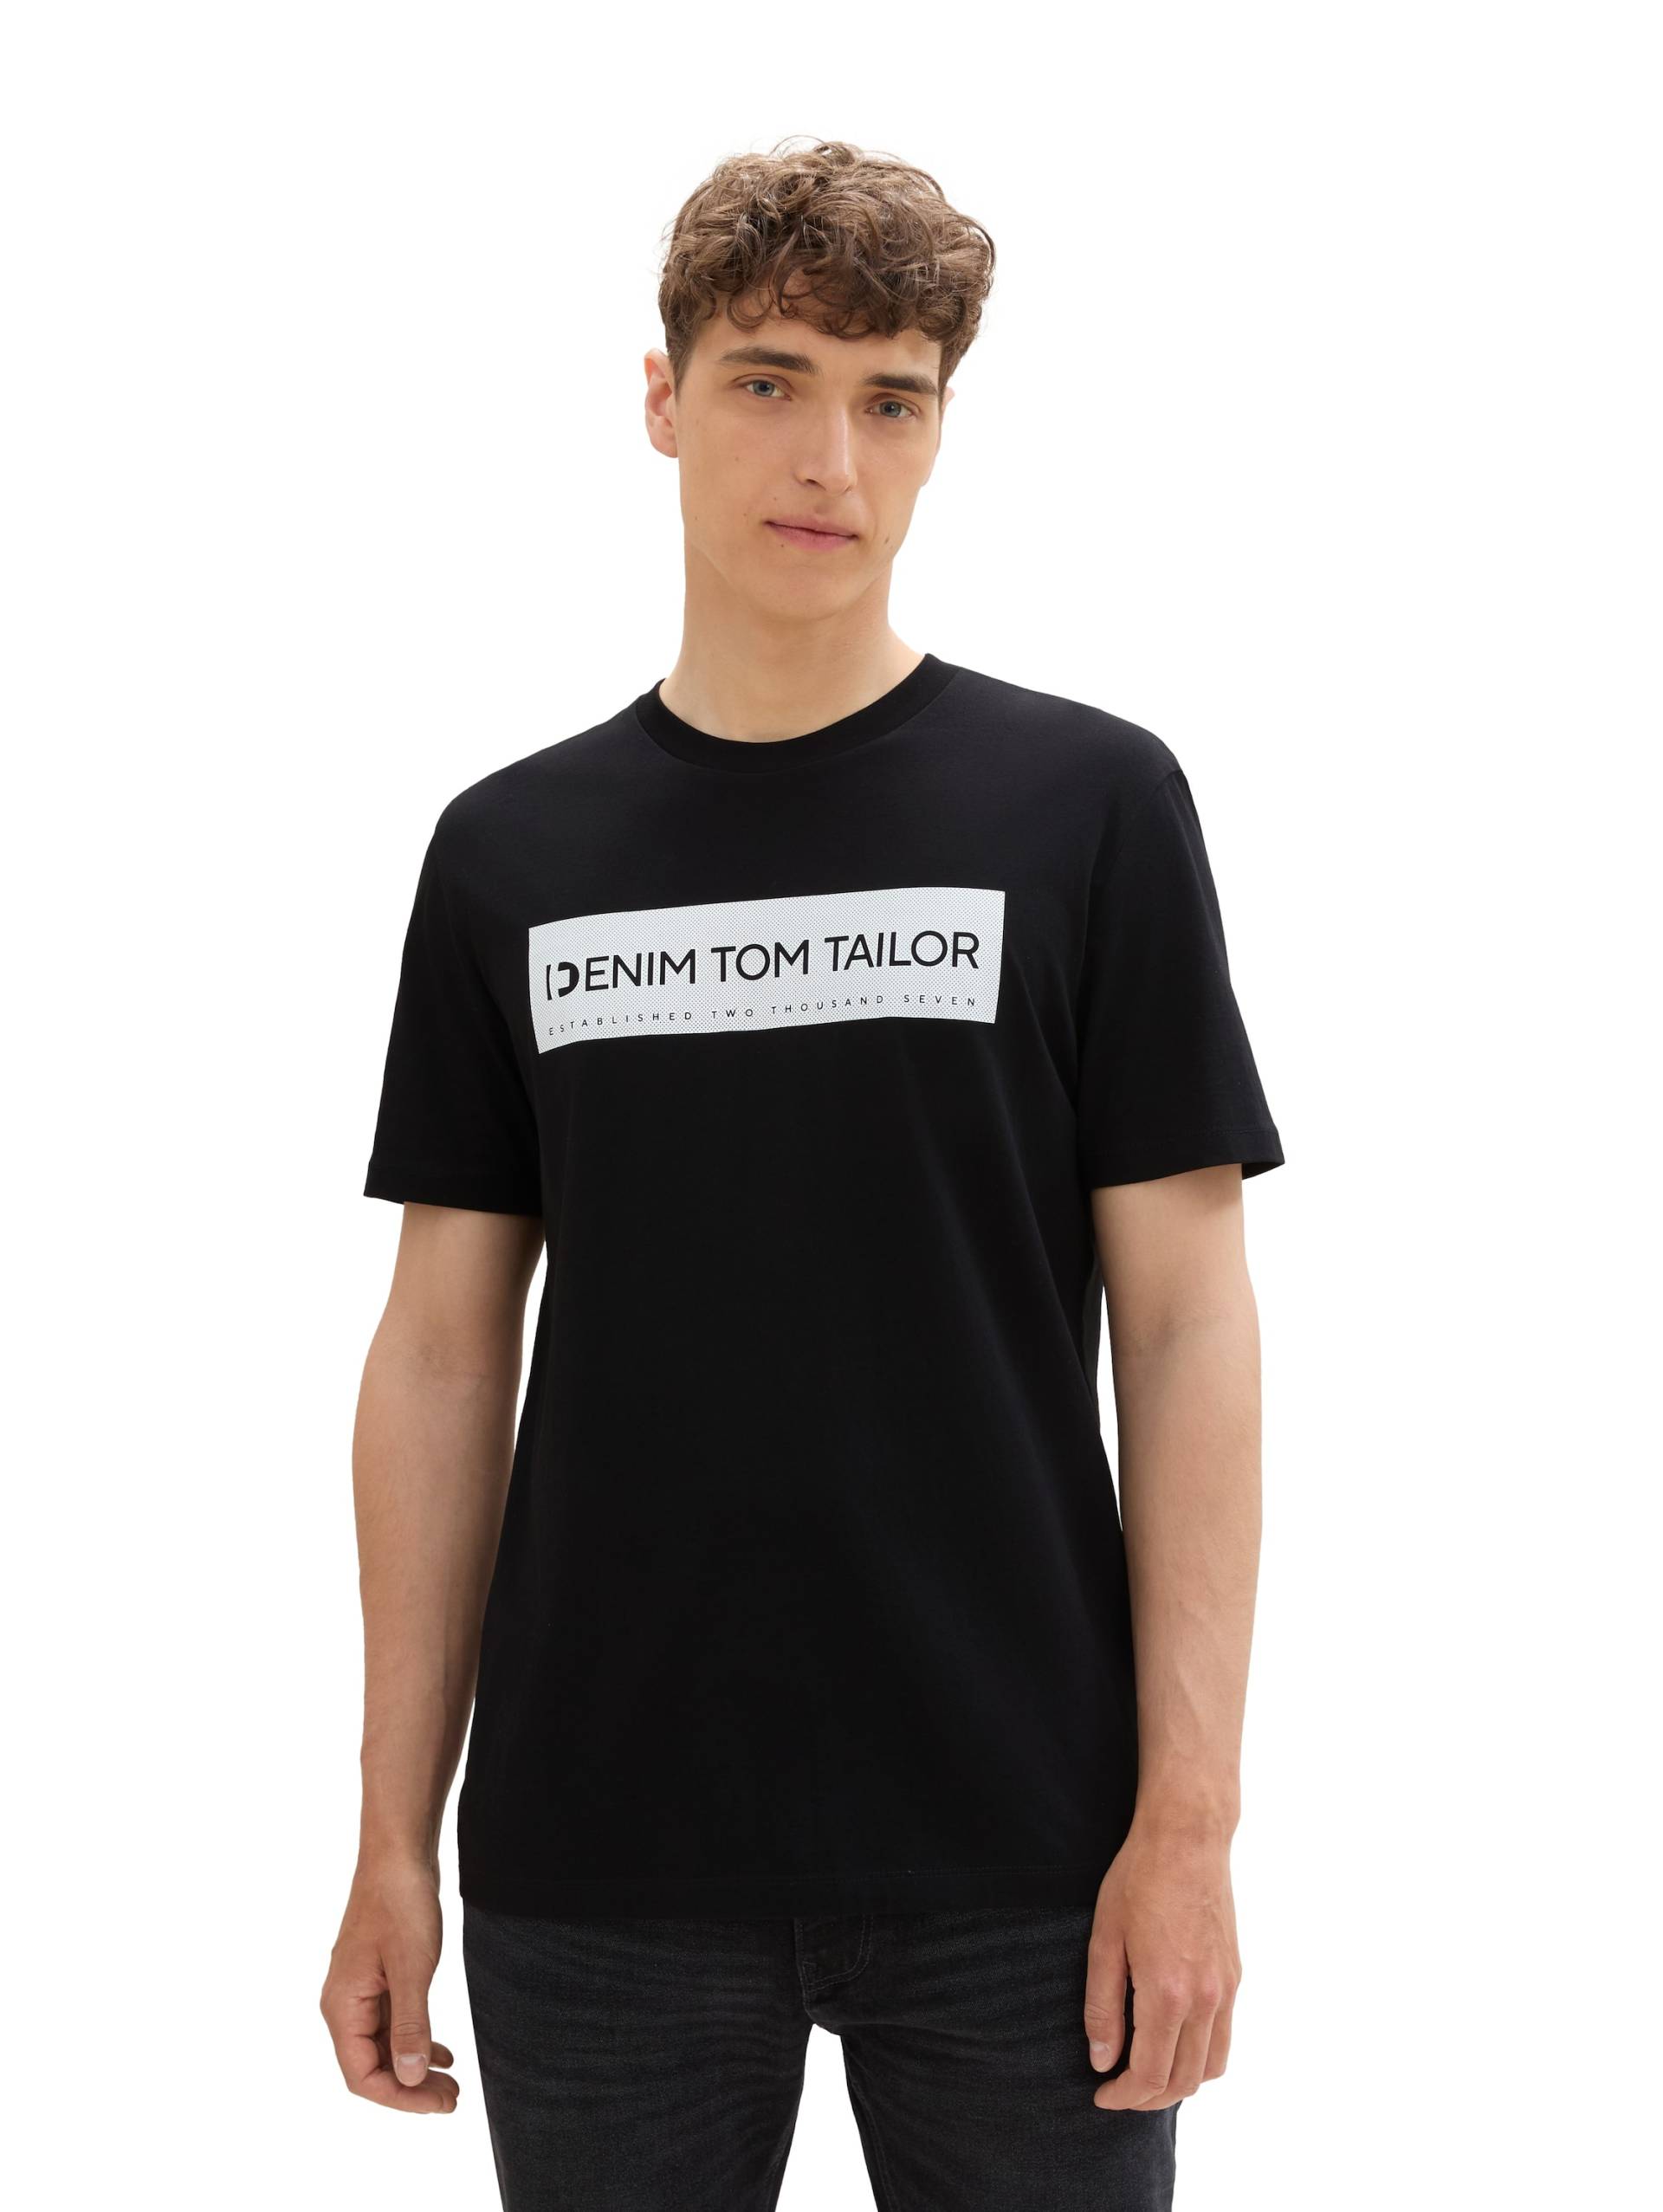 TOM TAILOR Denim T-Shirt, mit Logo Print von Tom Tailor Denim